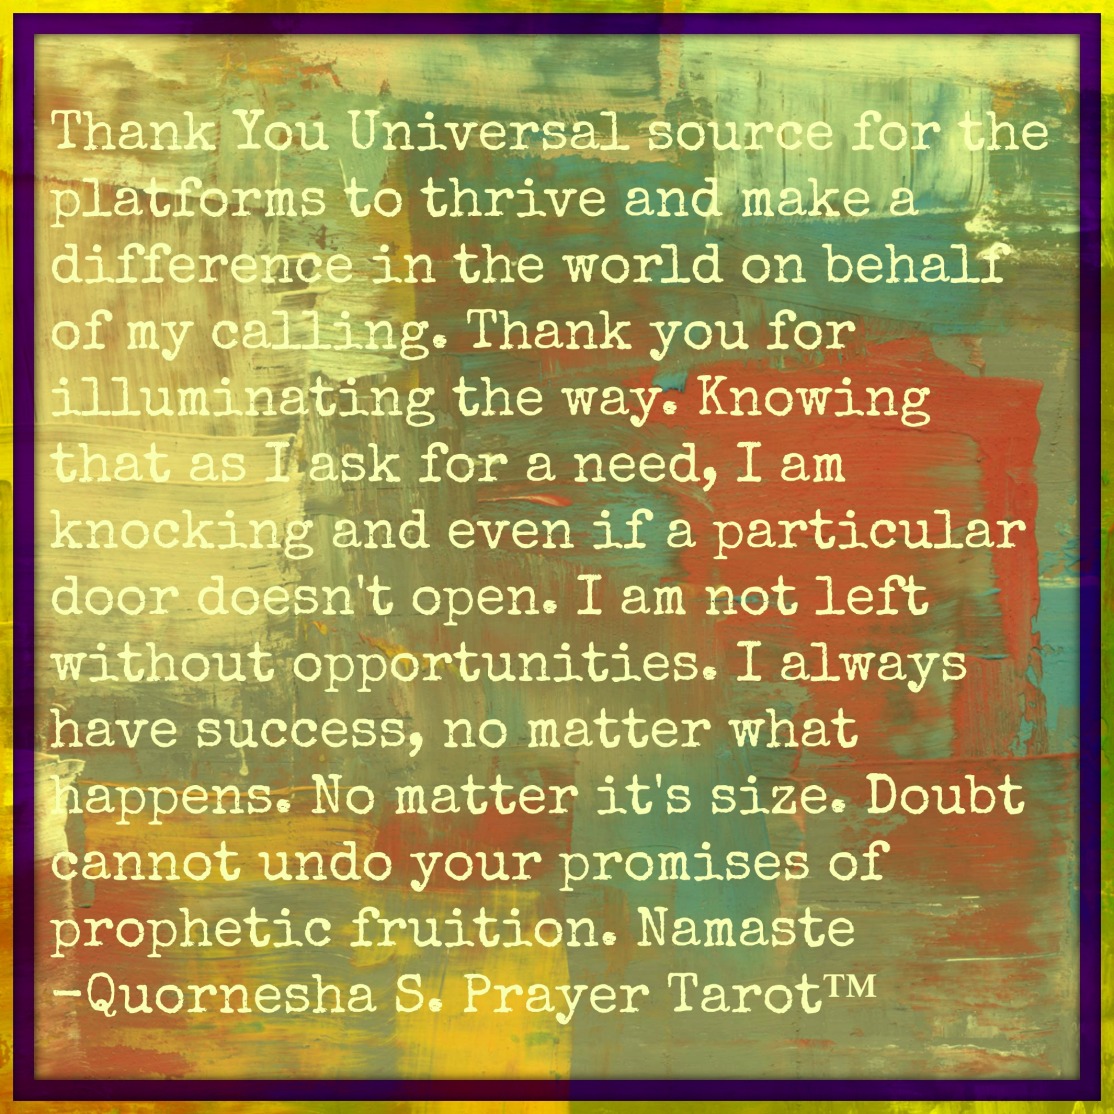 Quornesha S. Prayer Tarot™